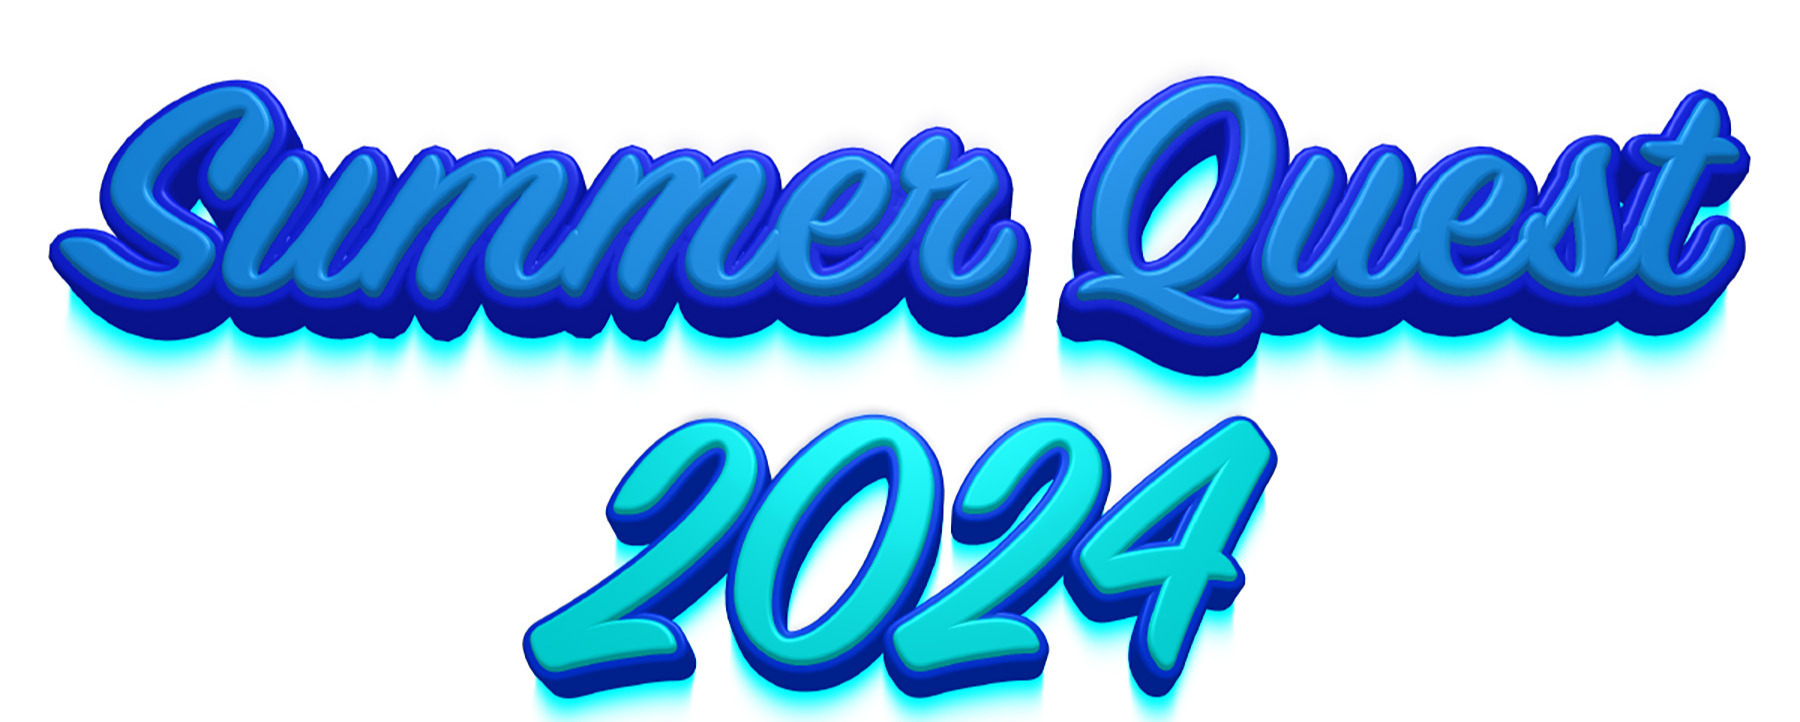 Summer Quest 2024